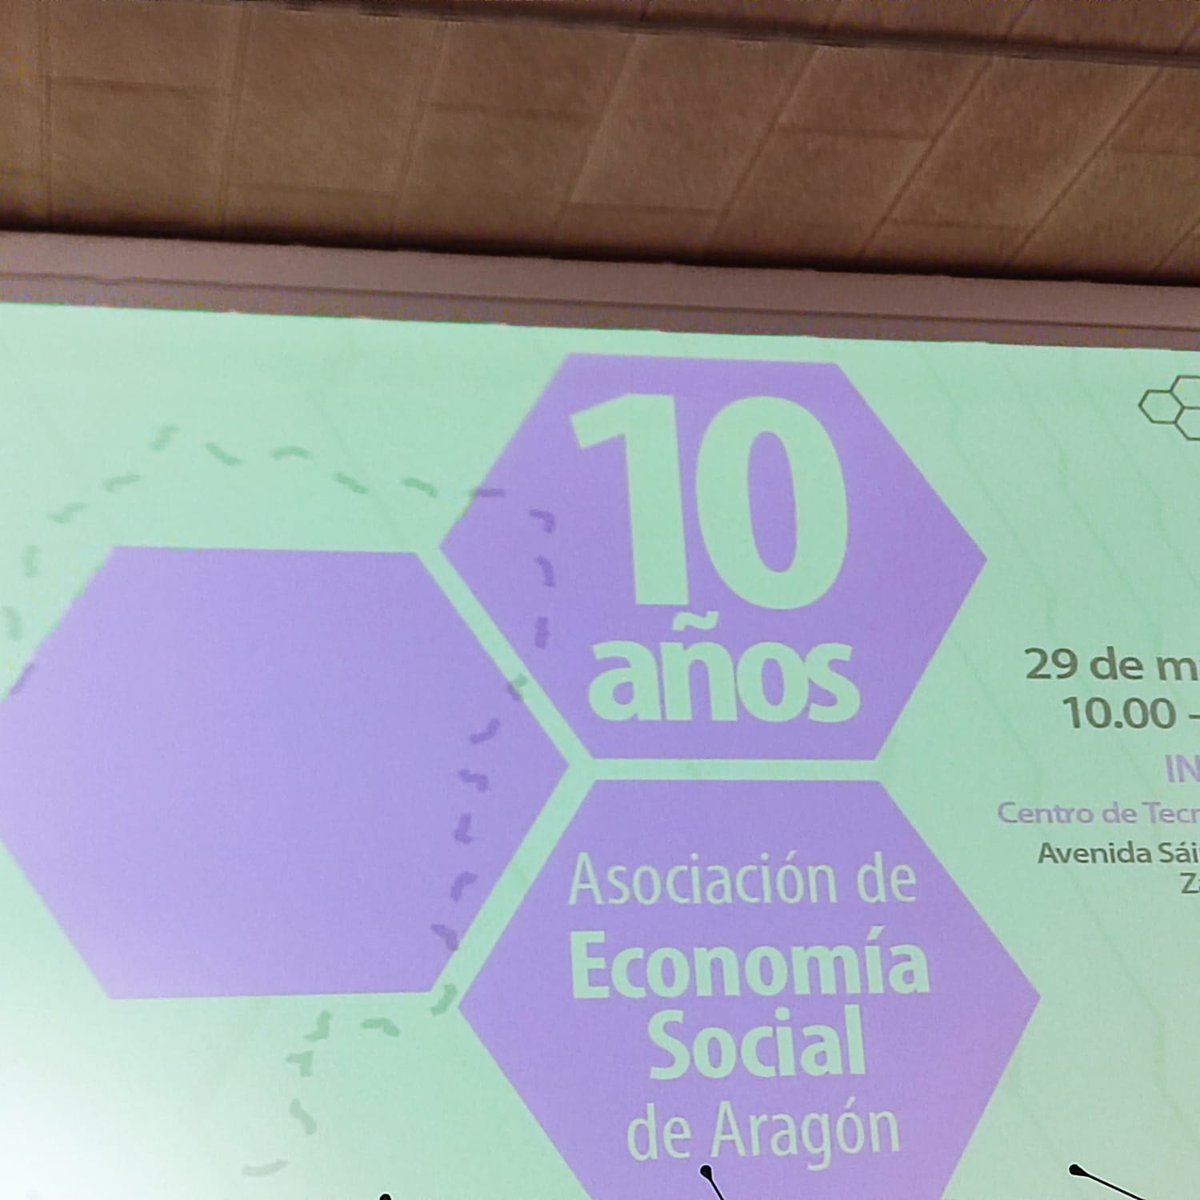 Celebramos el 10° aniversario de @CEPES_Aragon. Un orgullo remar juntas con toda la #EconomíaSocial para construir un mundo más justo. 'Porque otra forma de hacer economía es posible' y necesaria....